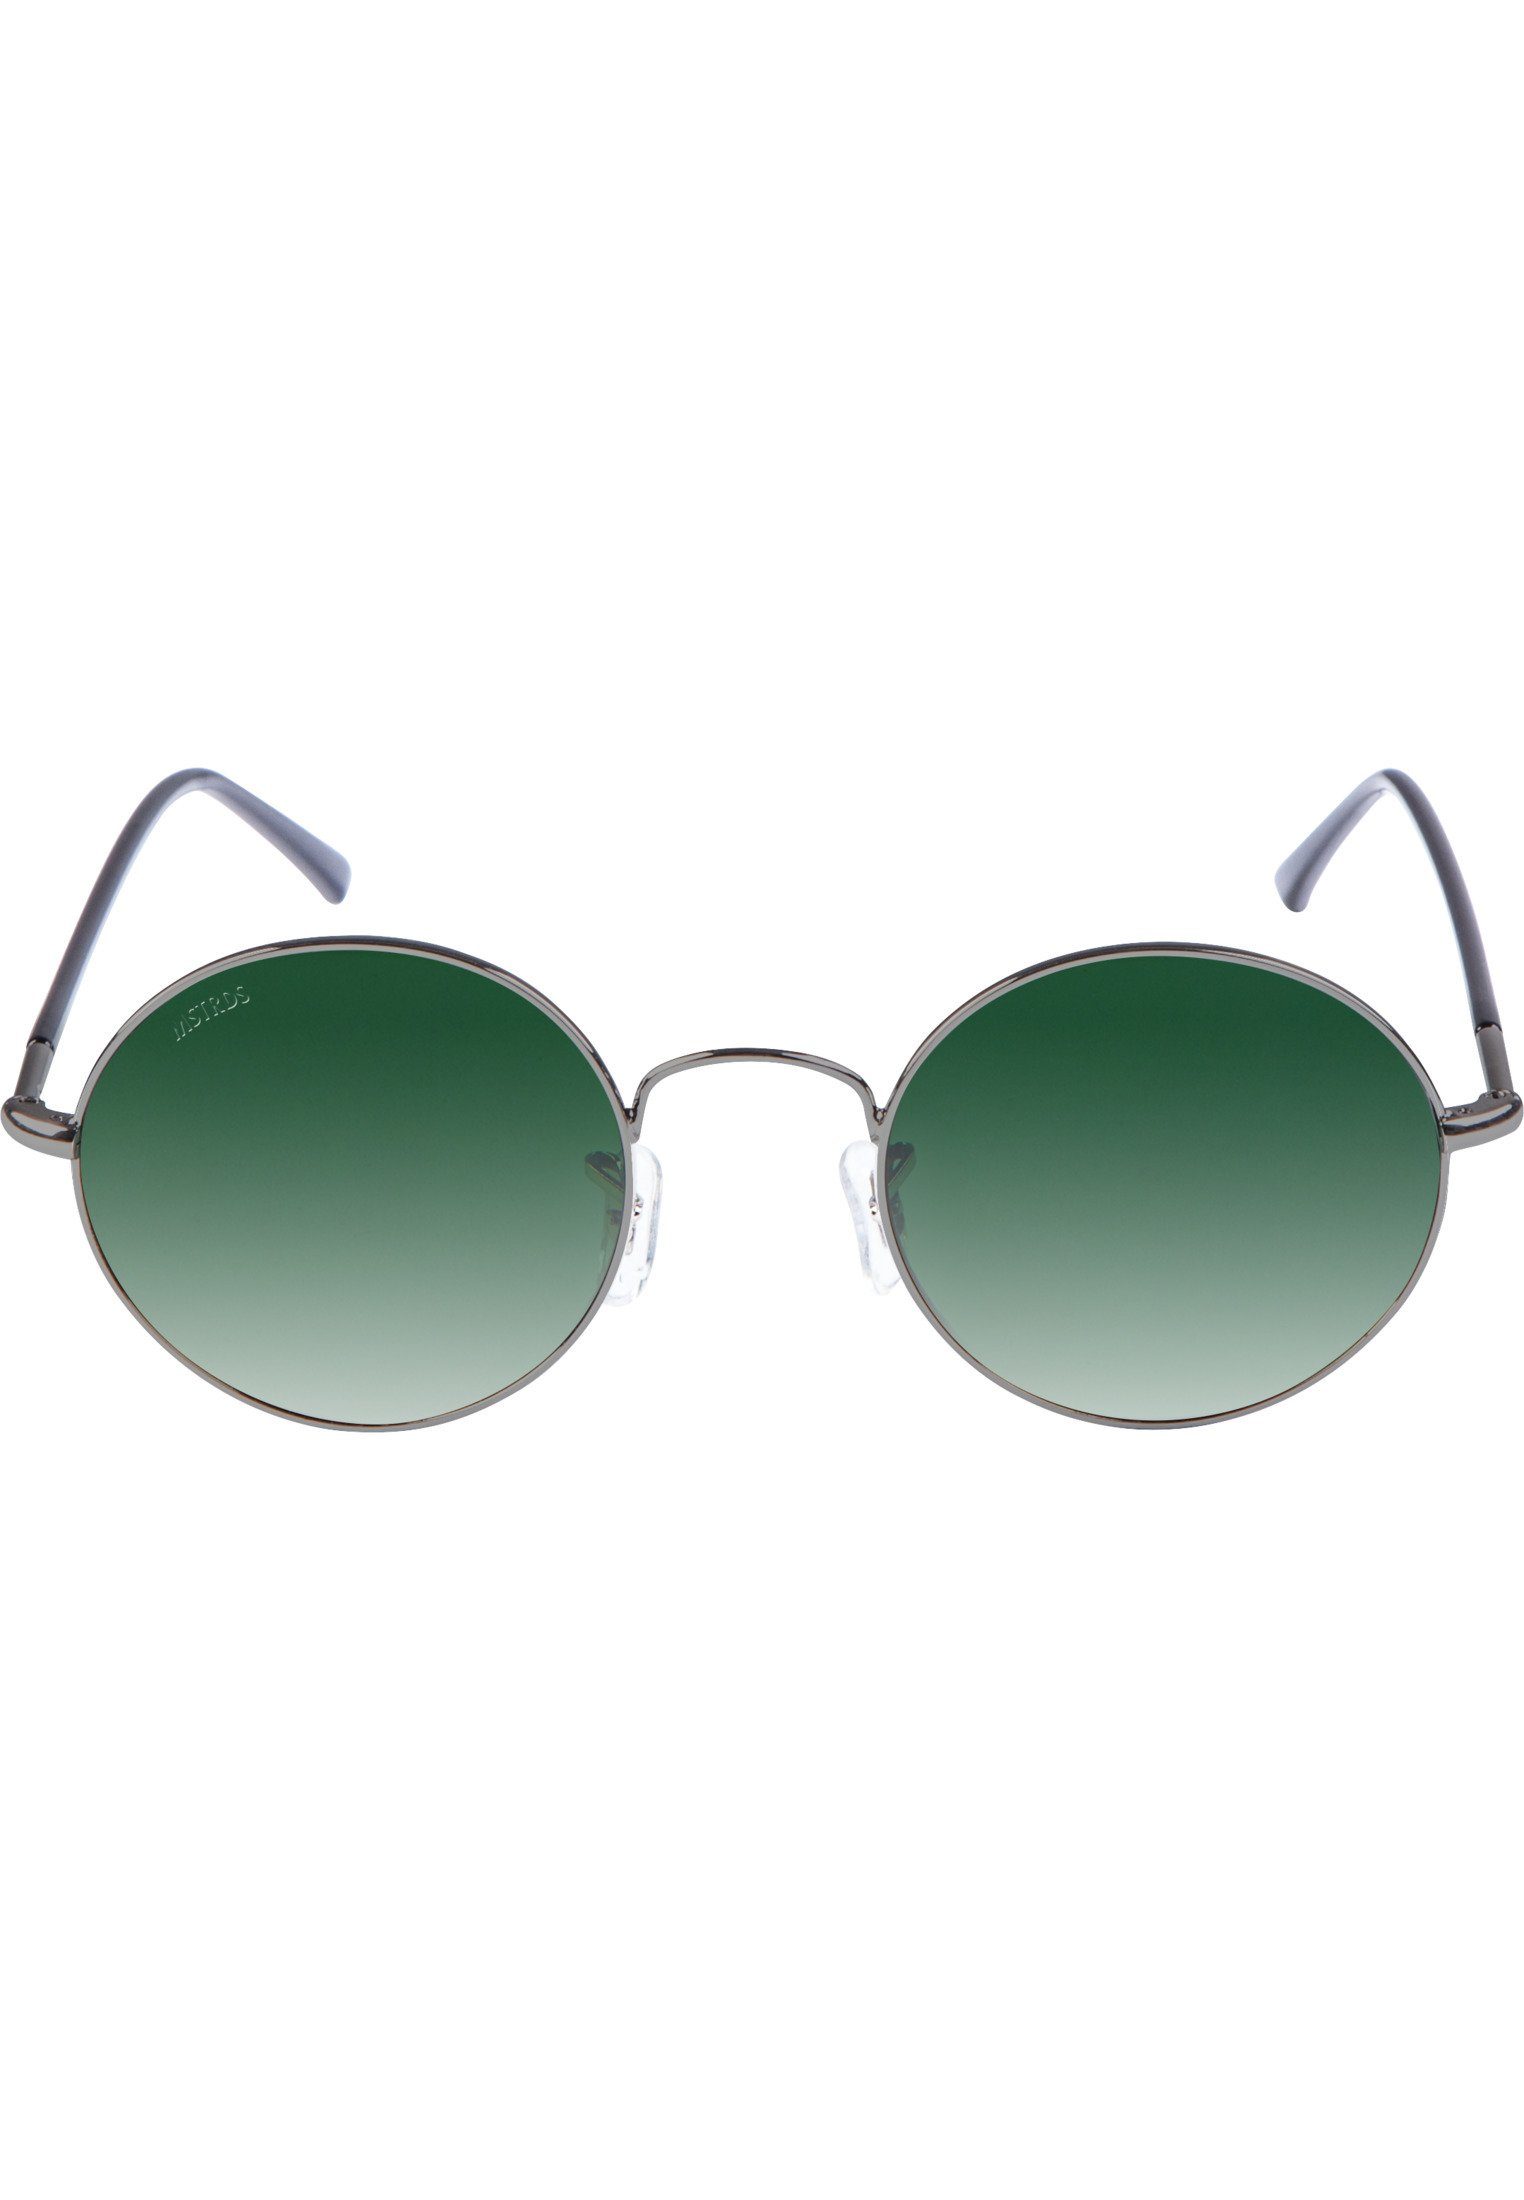 Sonnenbrille Flower Sunglasses MSTRDS Accessoires